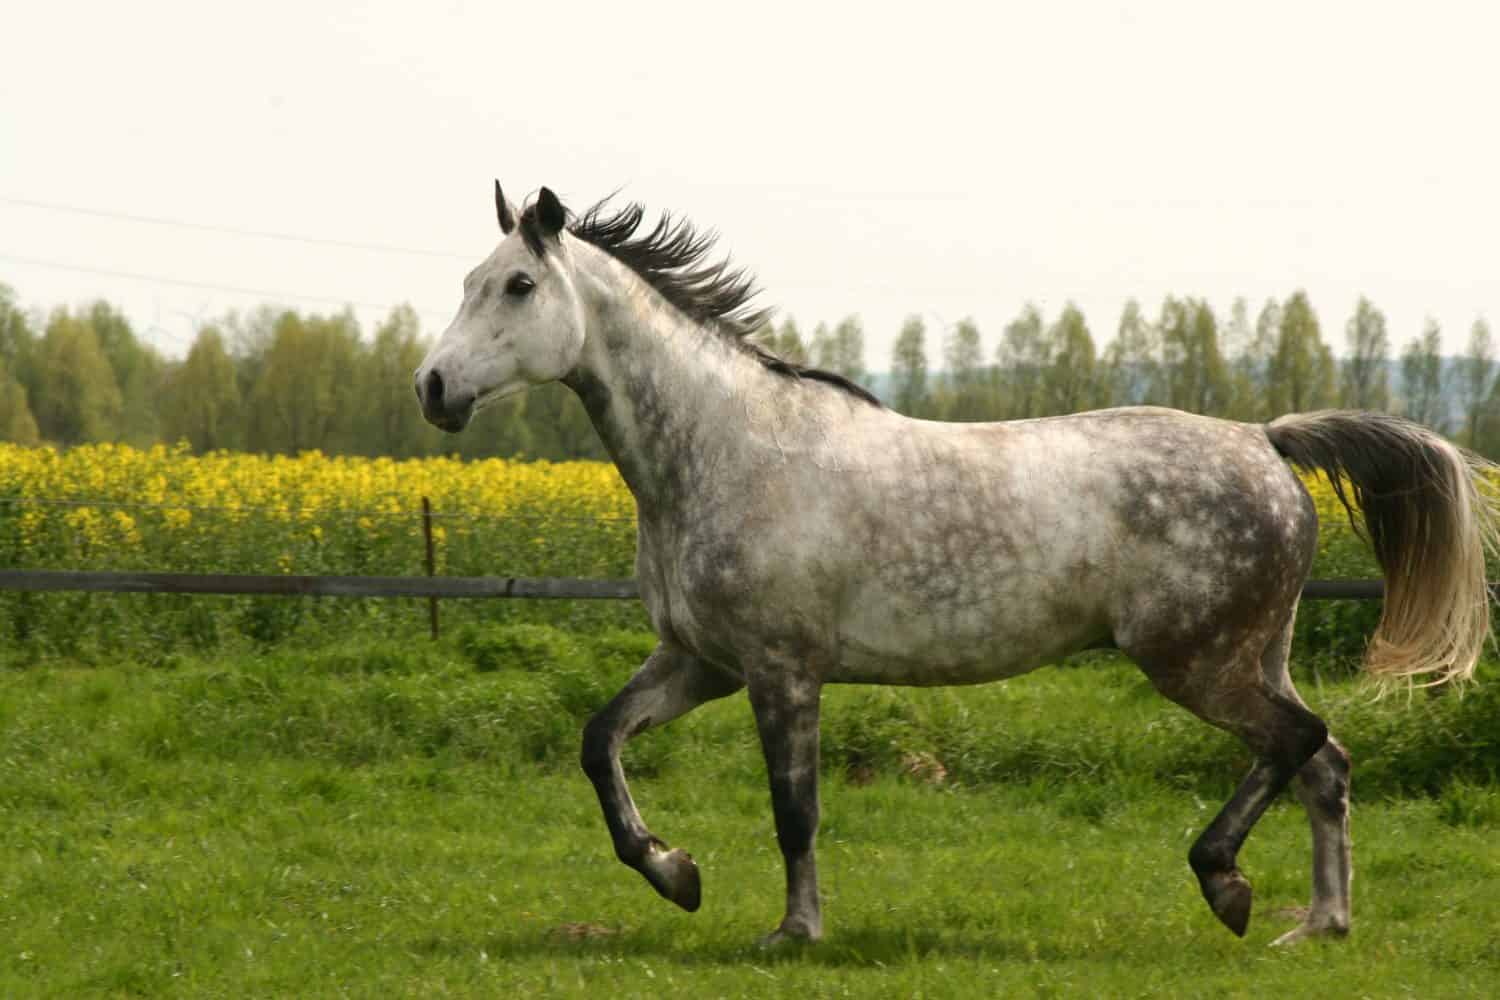 Gray westphalian horse trotting on meadow